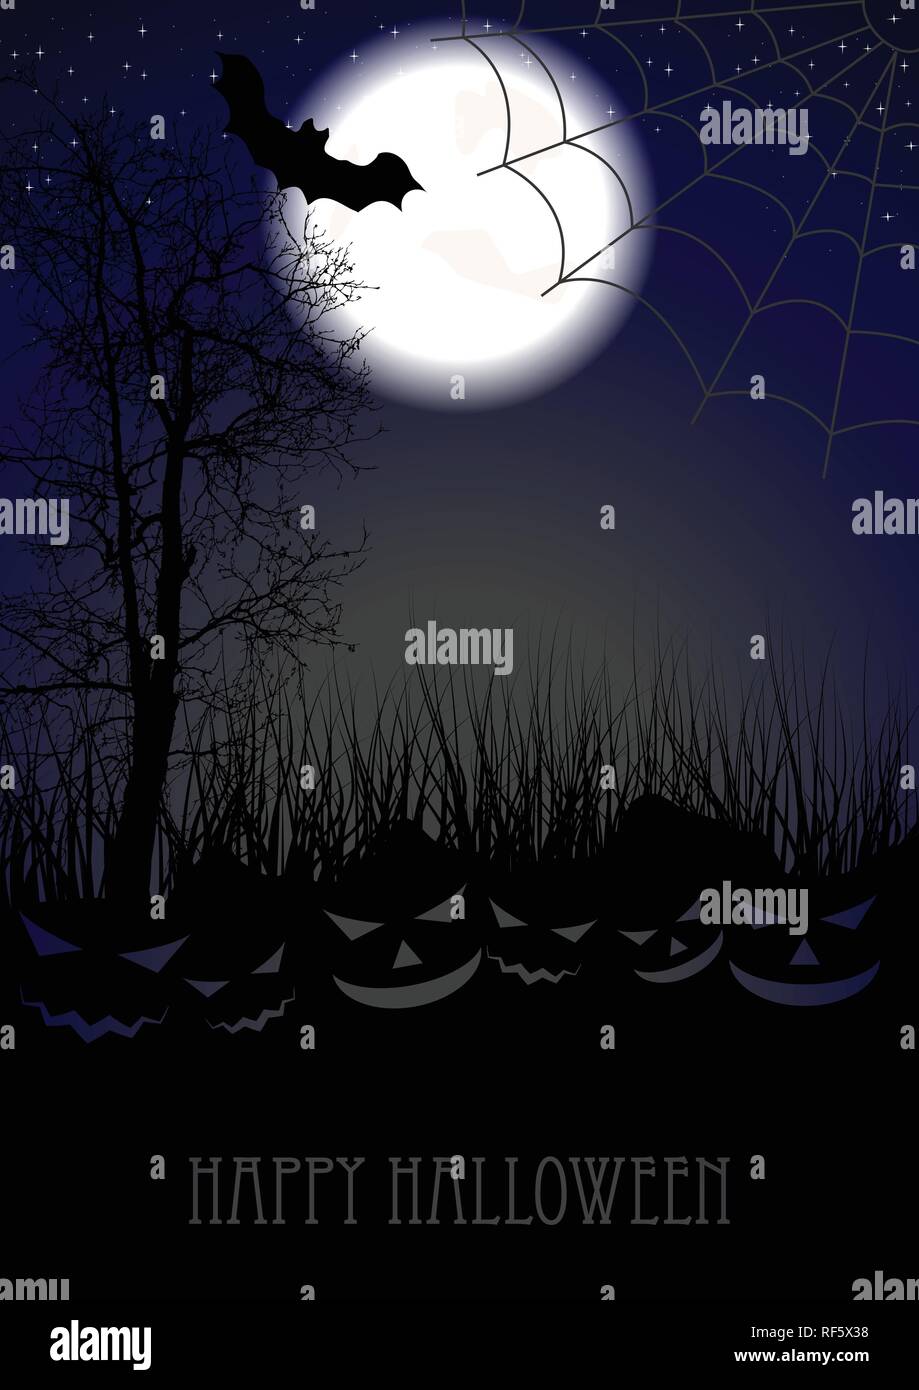 Nuit de lune sombre Halloween fond avec Jack-O-Lantern pumpkin silhouettes. Conception vectorielle Illustration de Vecteur